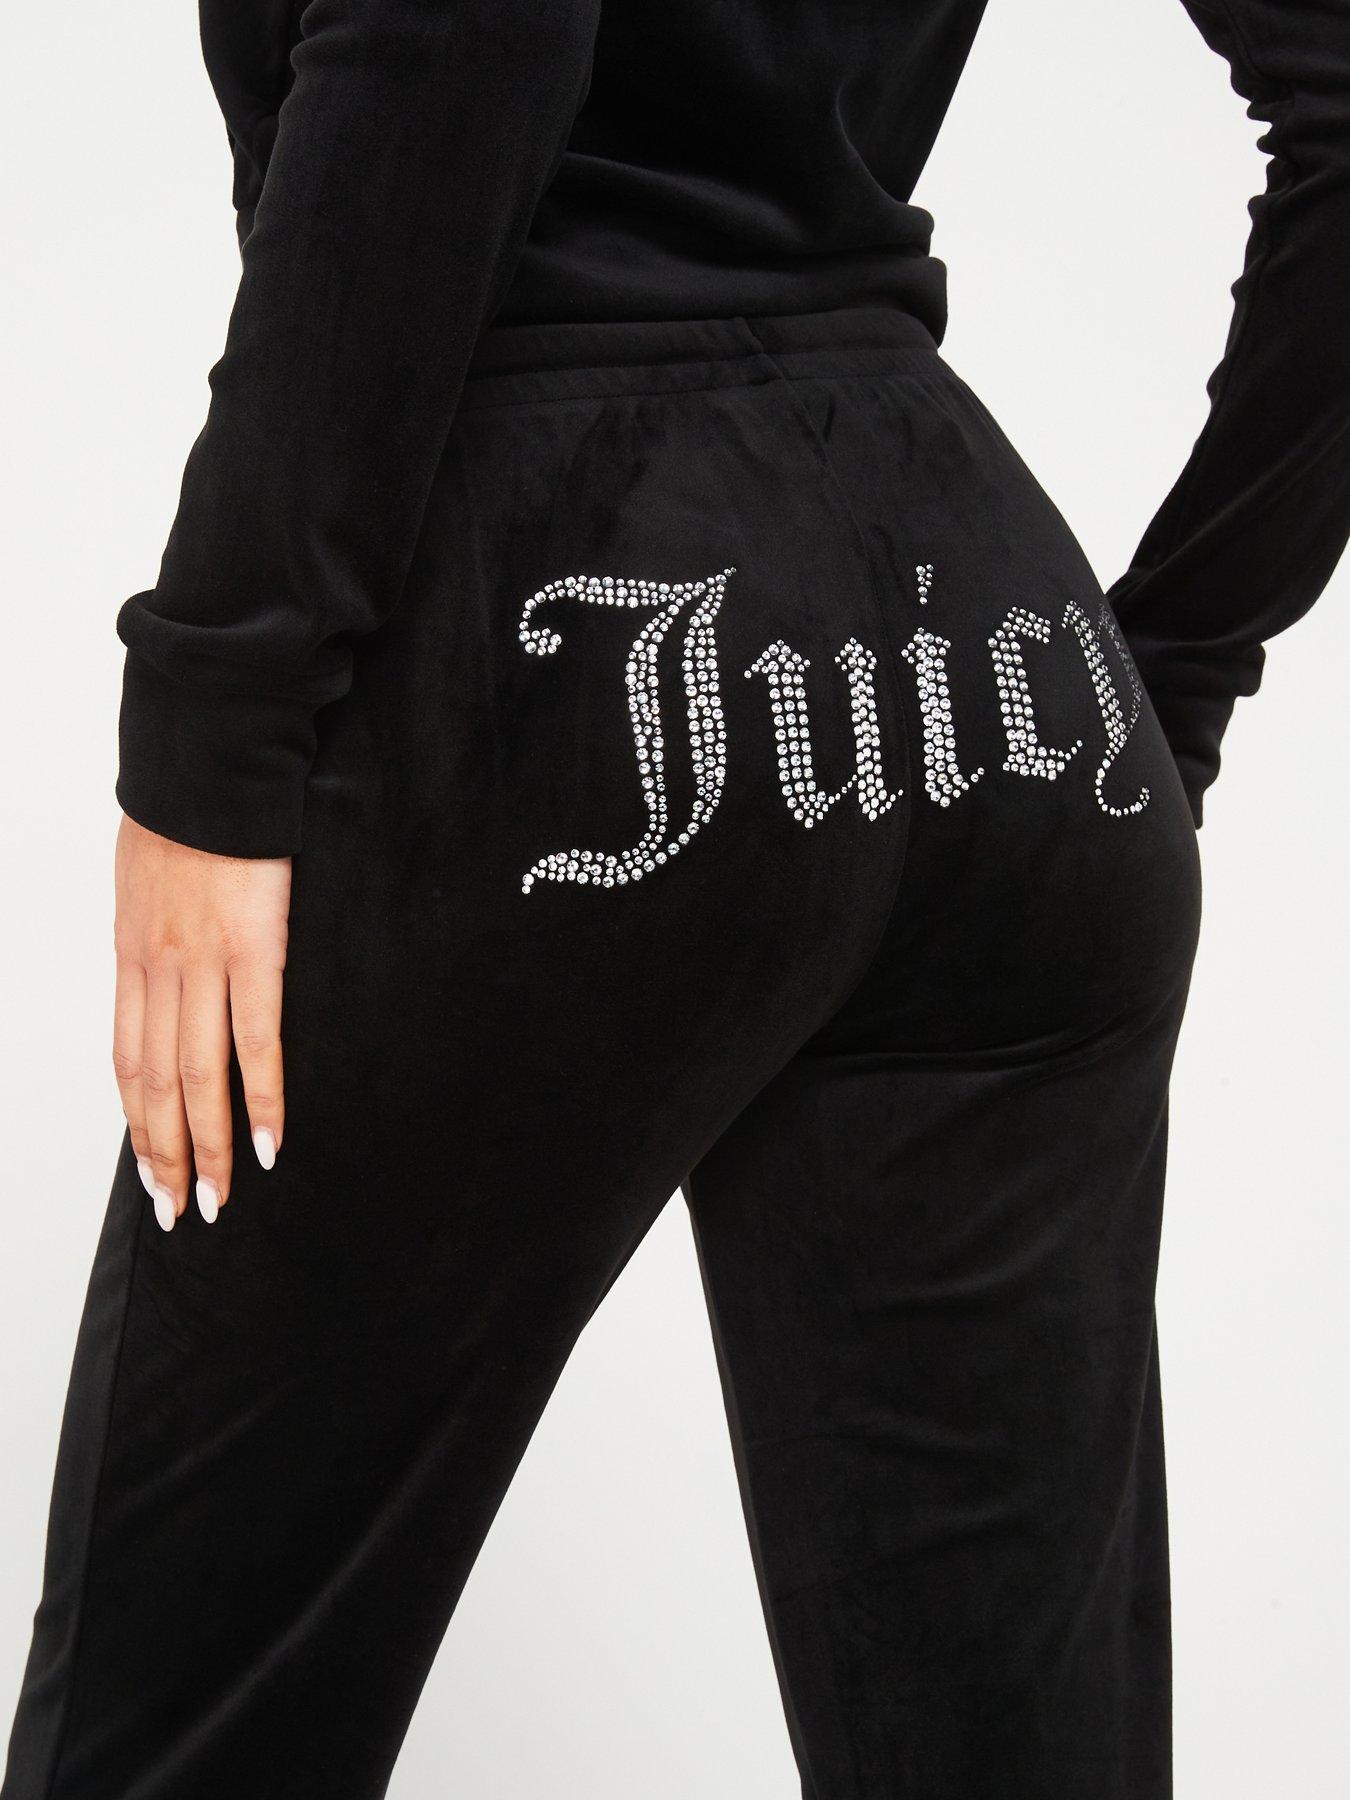 Y2K Juicy Couture Sport Leggings, Size M, In very